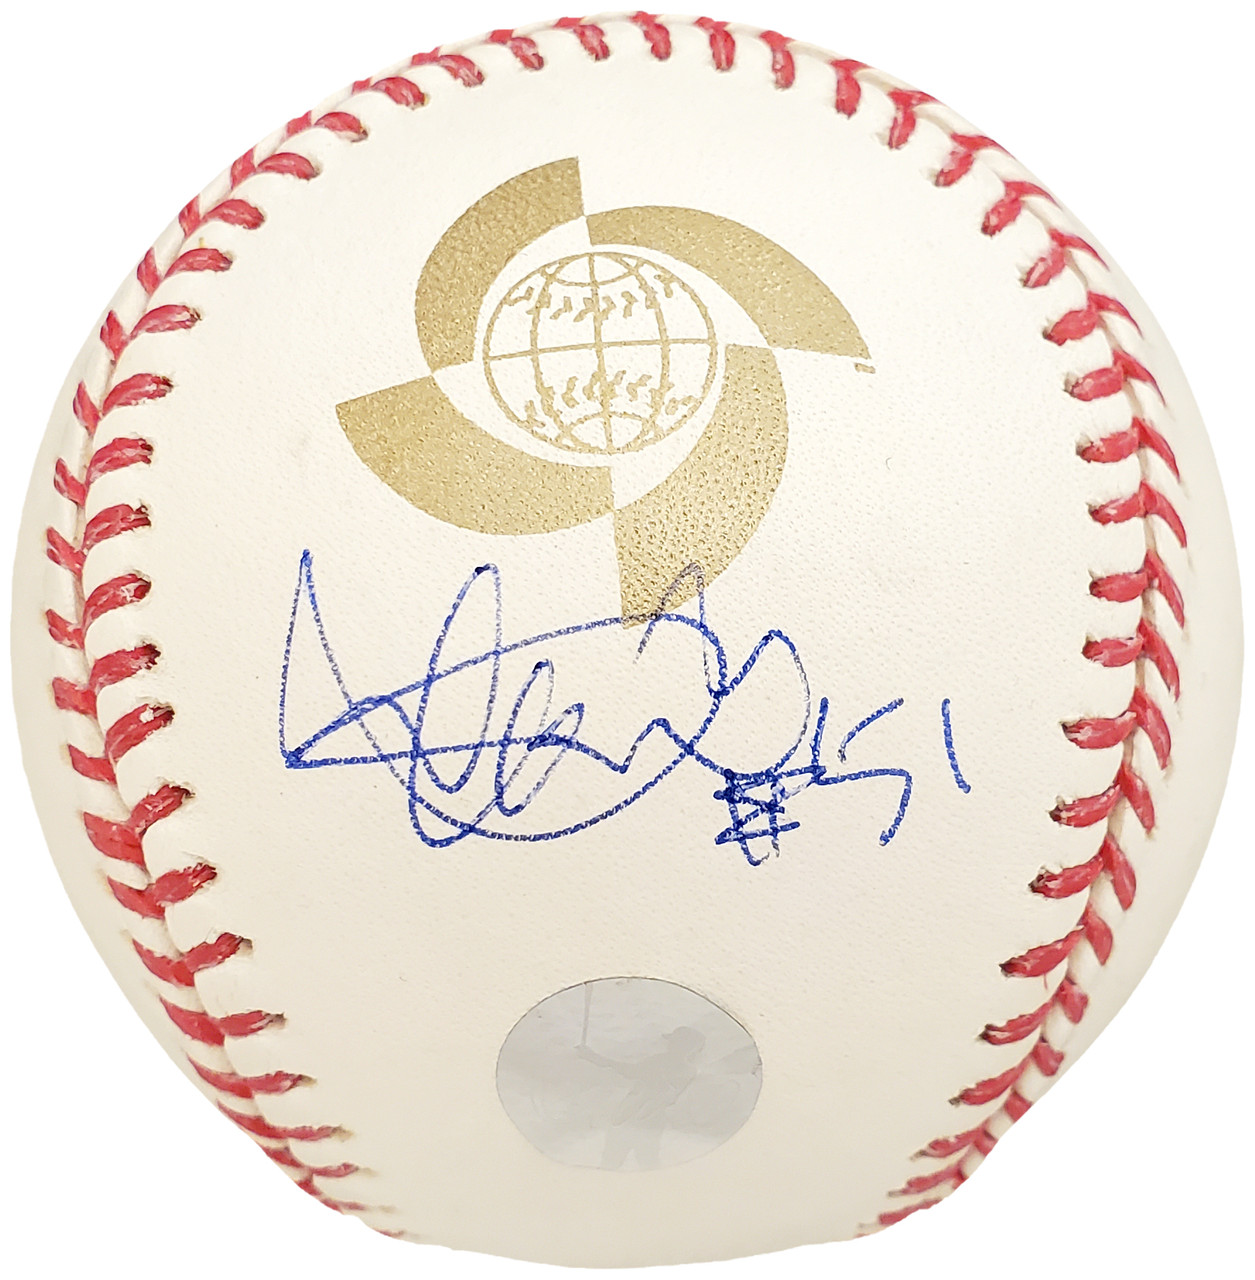 Ichiro Suzuki Autographed Seattle Mariners Majestic Baseball Jersey - Ichiro  Hologram at 's Sports Collectibles Store